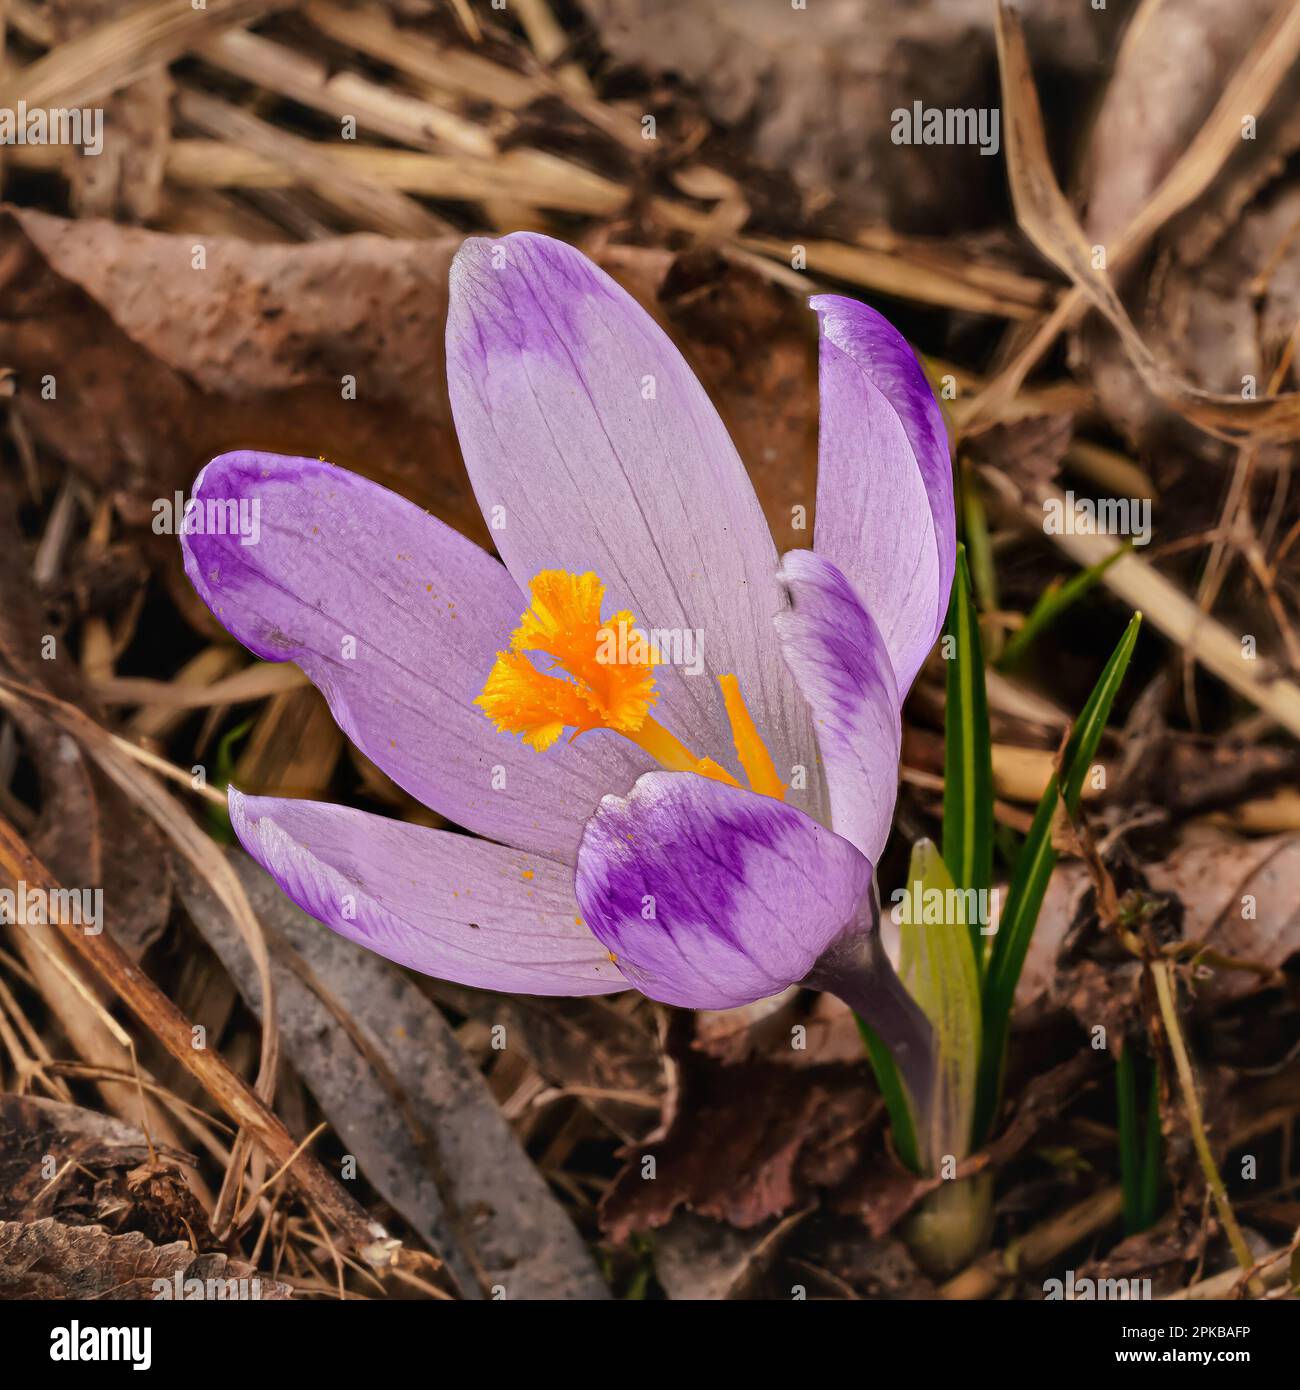 Iris pourpre et jaune sauvage ( Crocus heuffelianus ) fleur poussant à l'ombre, herbe sèche et feuilles autour Banque D'Images